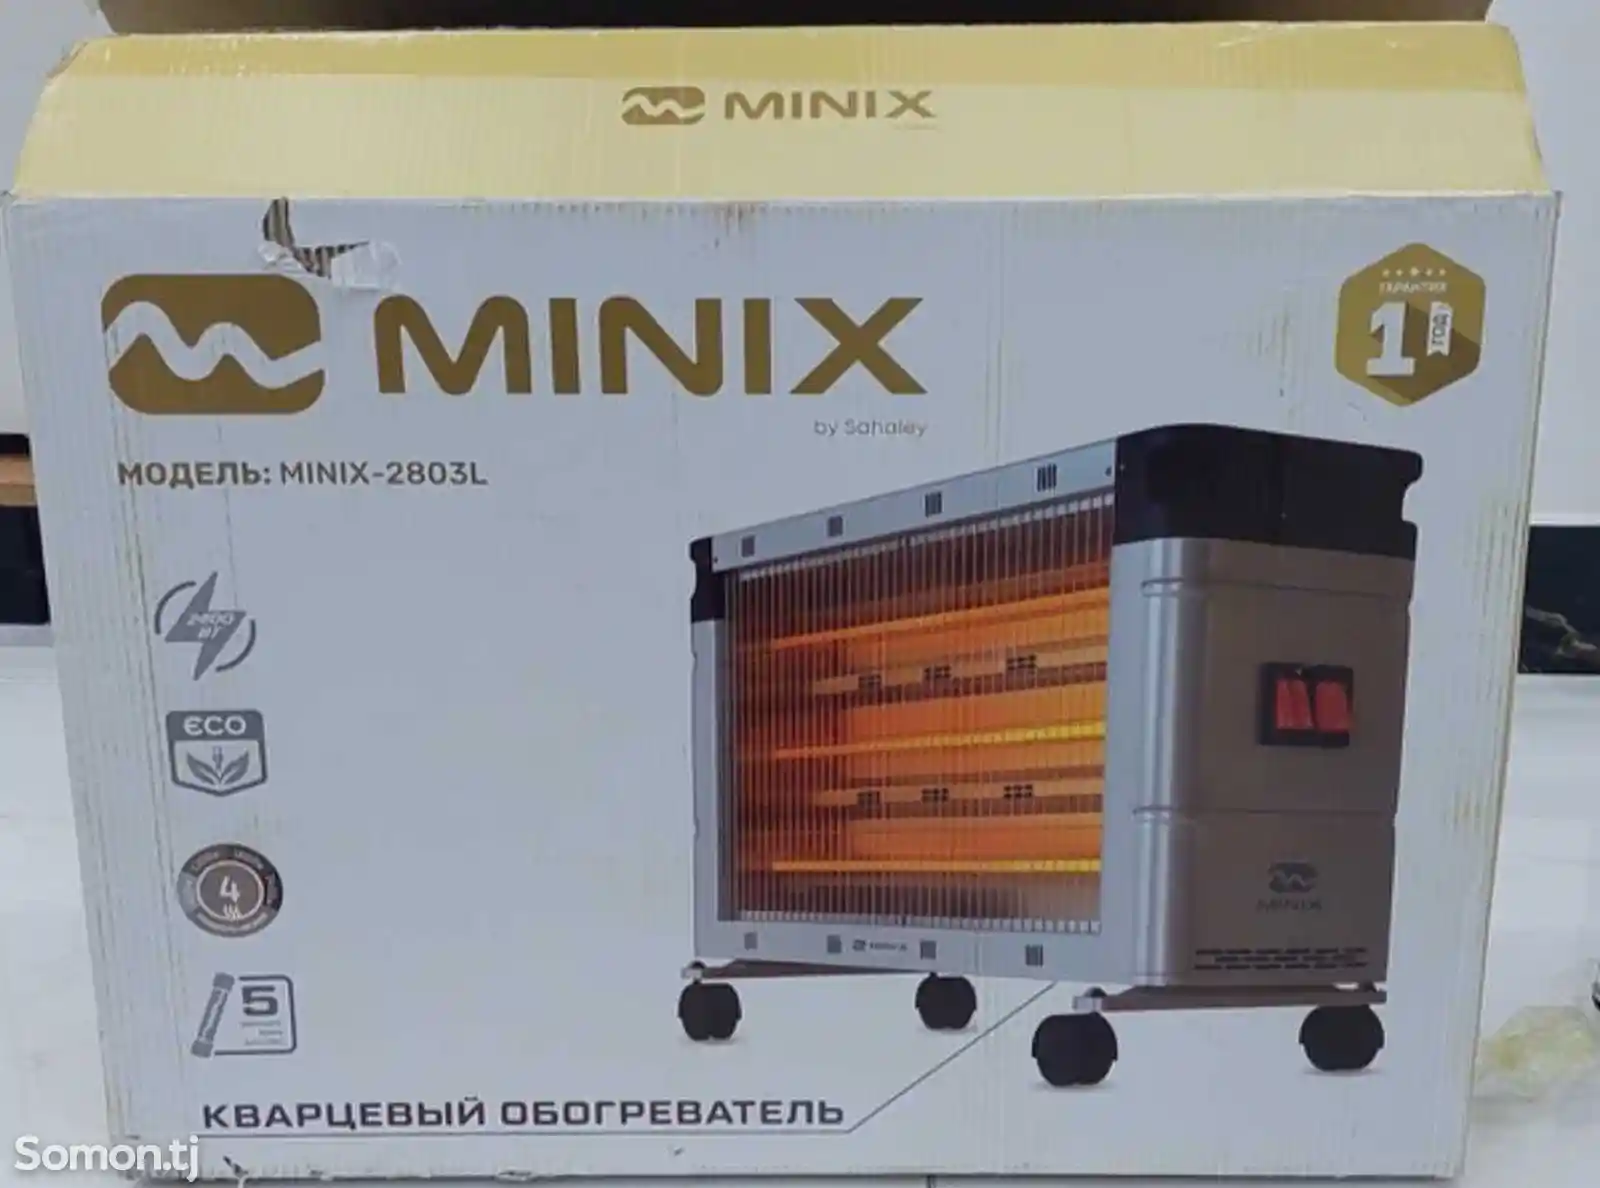 Обогреватель MINIX-2